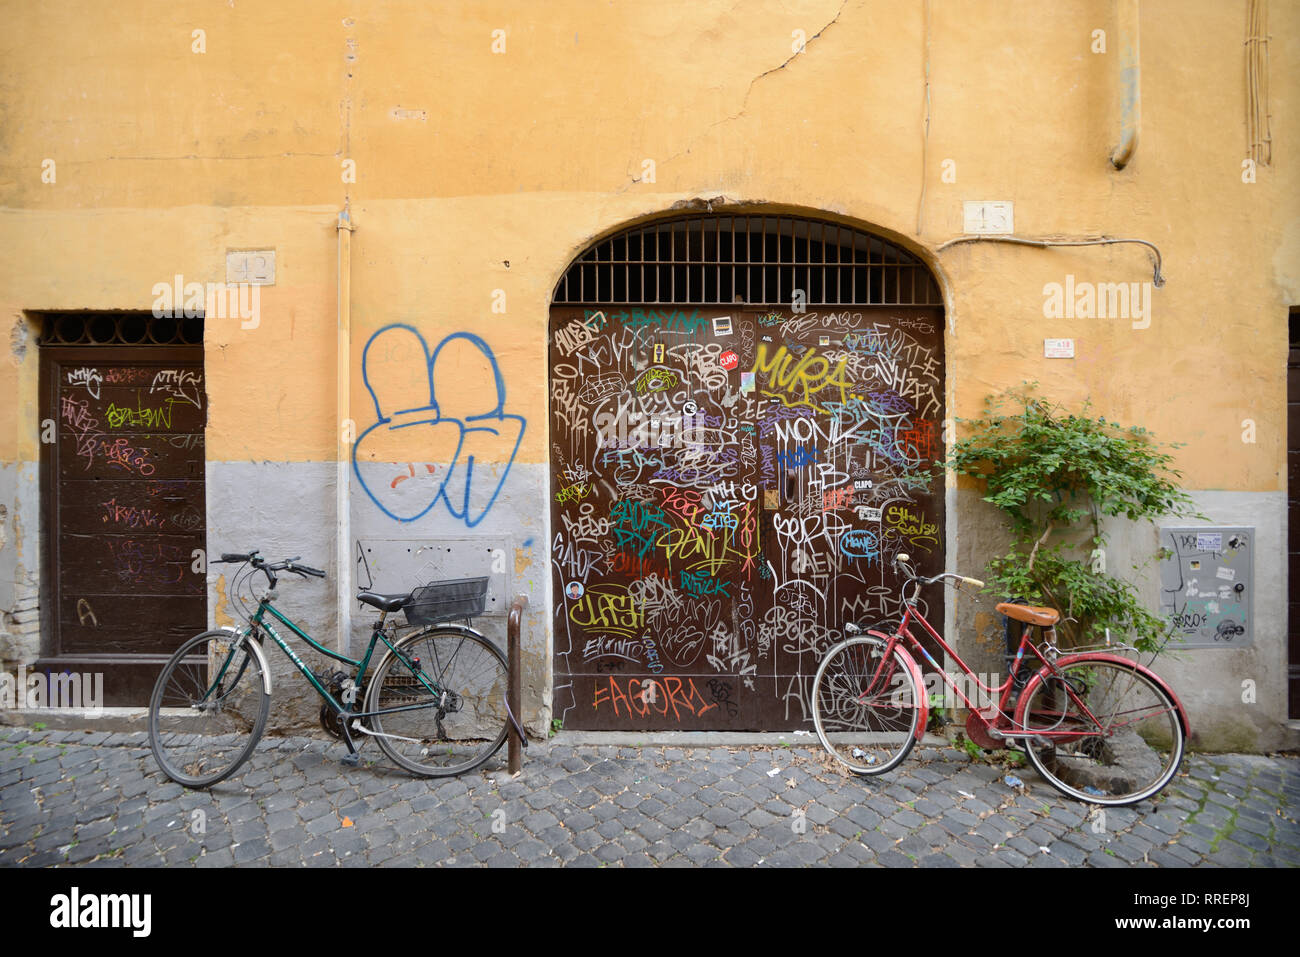 Scena di strada con le biciclette parcheggiate e coperto di graffiti muri color ocra nell'elegante e storico quartiere di Trastevere Roma Italia Foto Stock